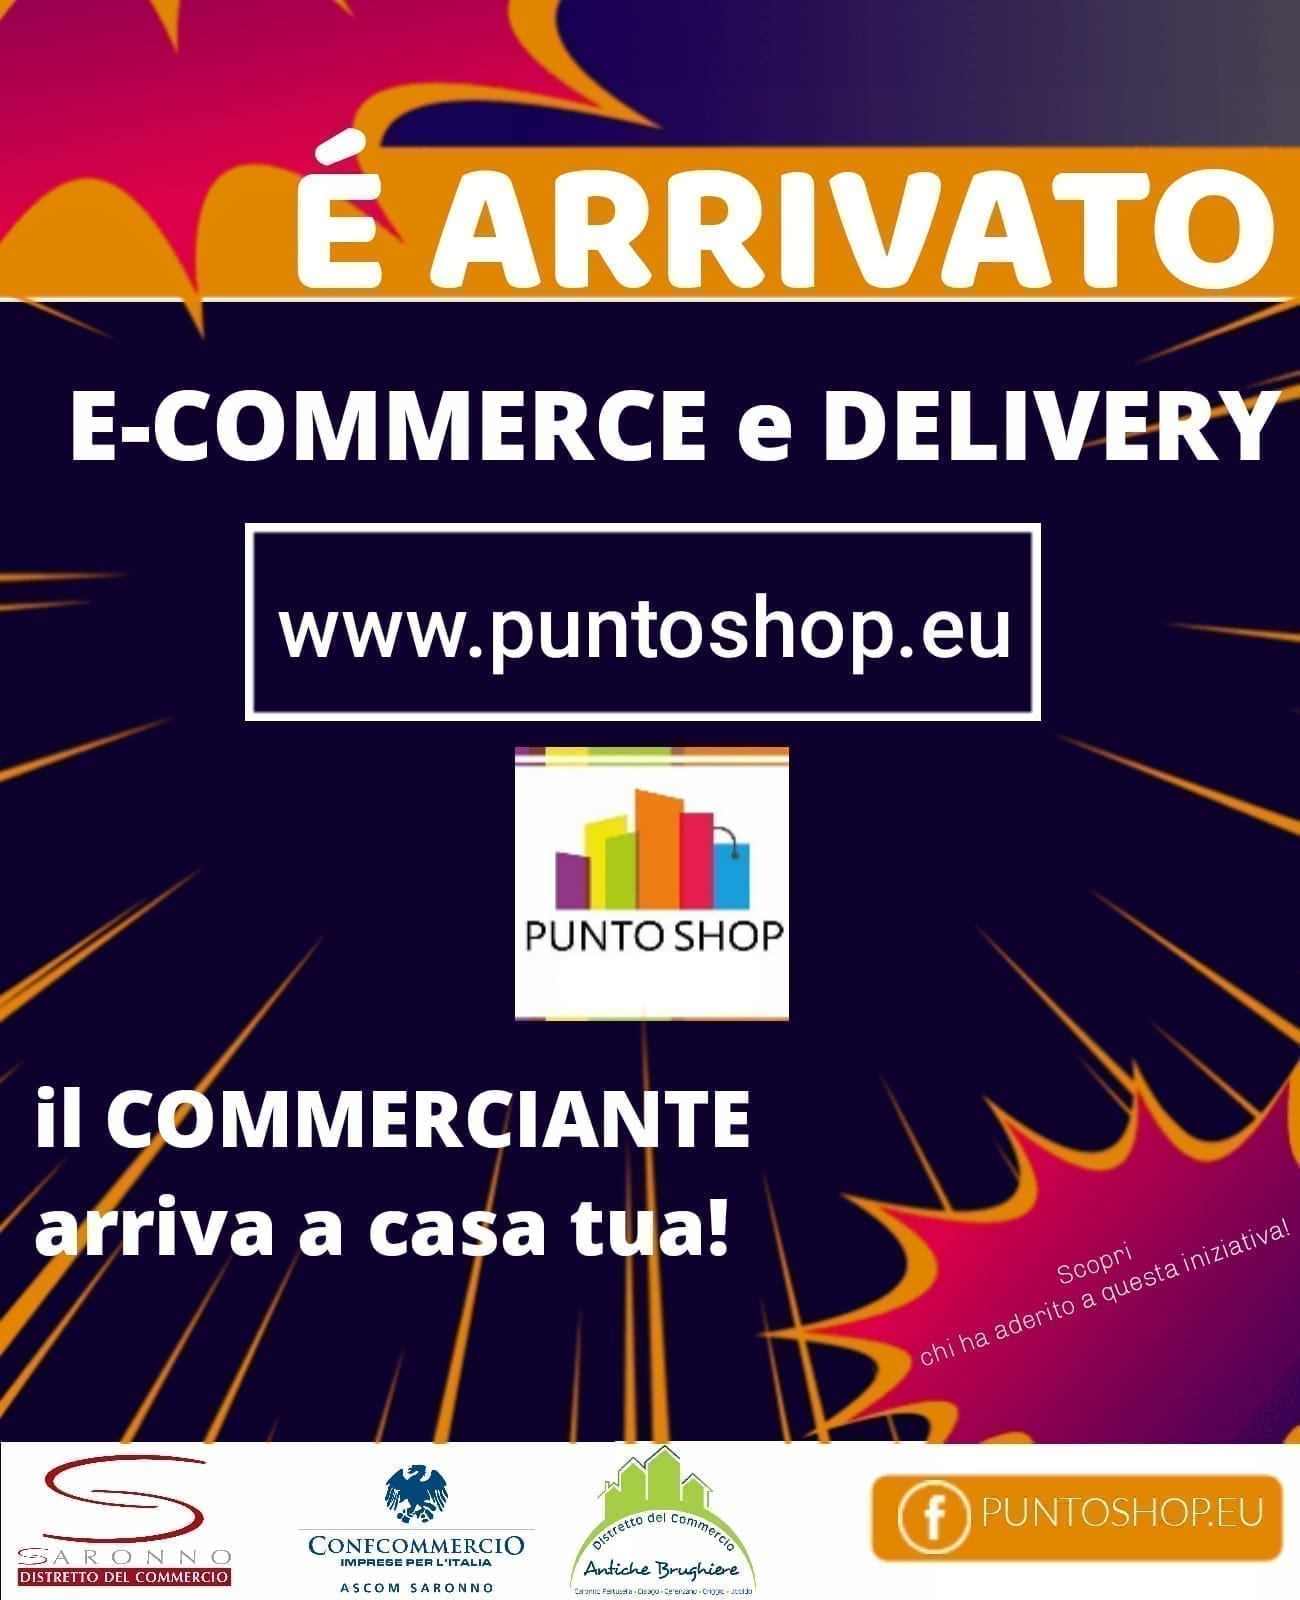 Con Puntoshop Ascom dà ai commercianti del Saronnese una piattaforma per e-commerce e consegna a domicilio